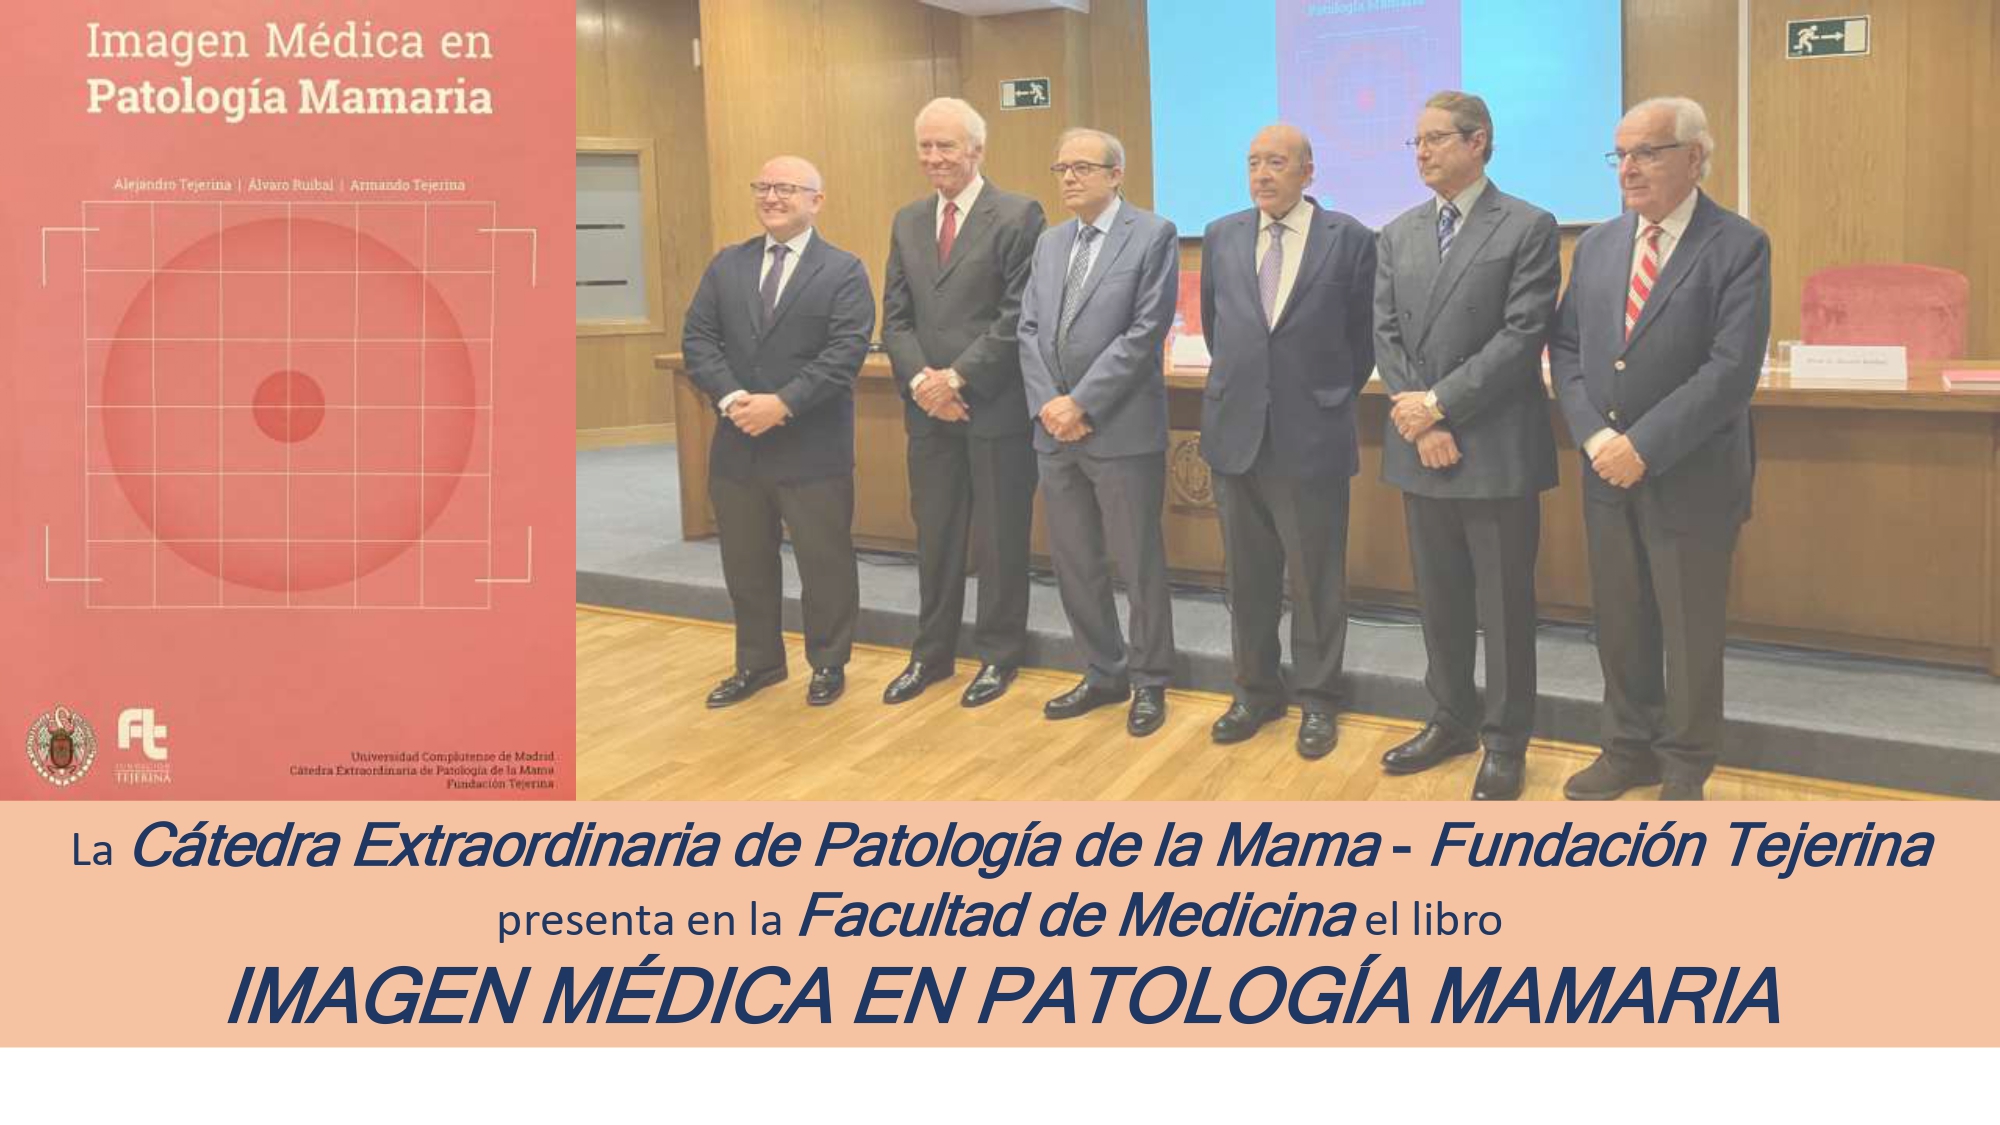 La Cátedra Extraordinaria de Patología de la Mama - Fundación Tejerina  presenta en la Facultad de Medicina el libro  IMAGEN MÉDICA EN PATOLOGÍA MAMARIA